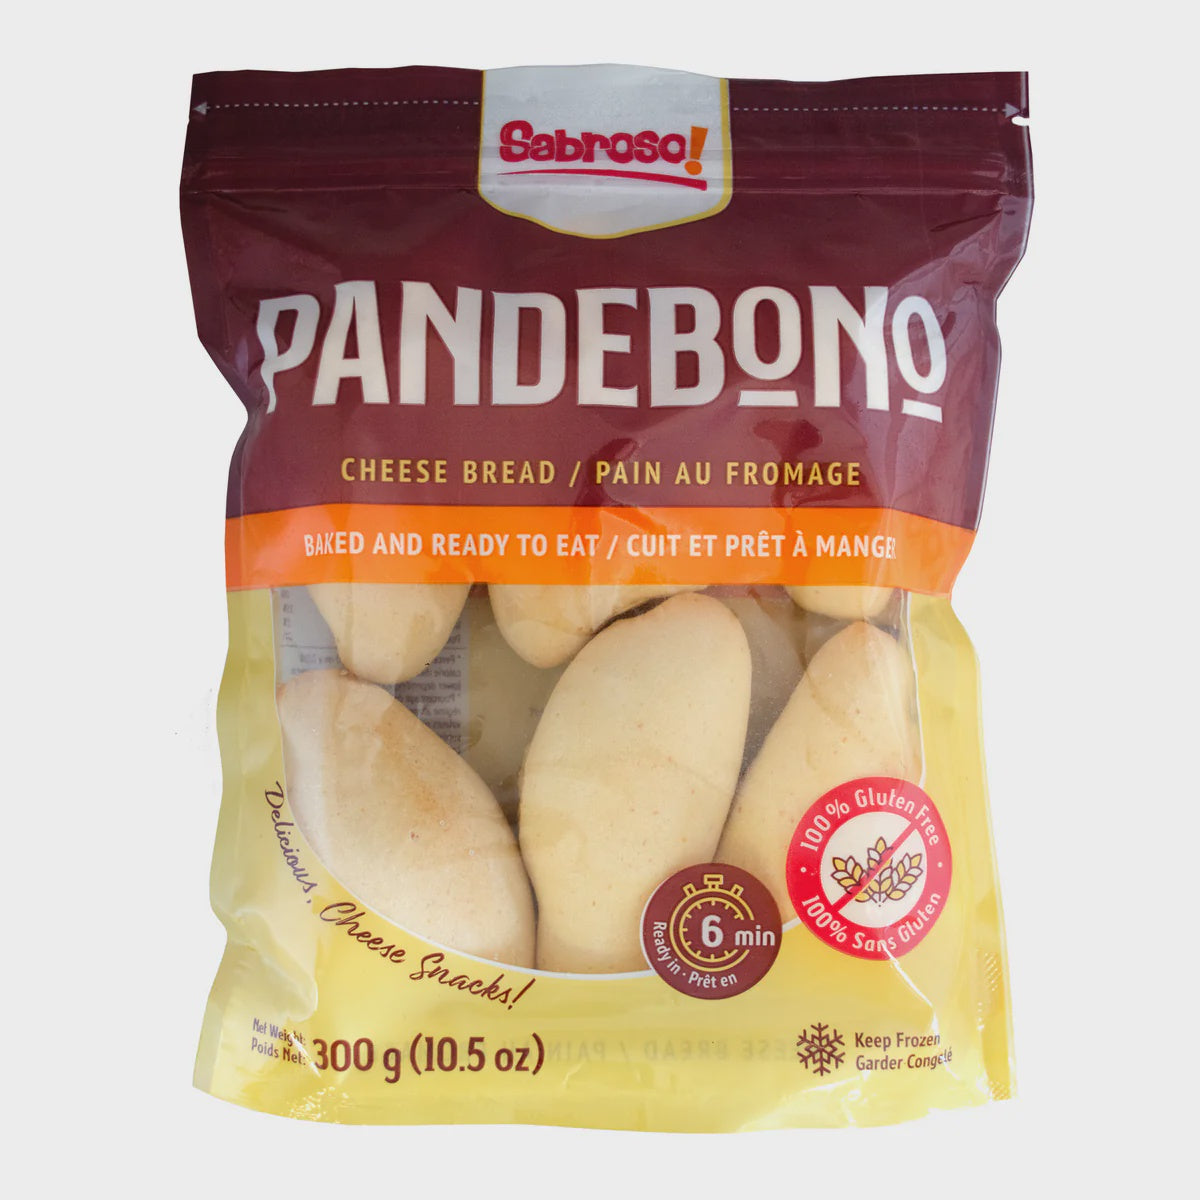 Pandebono Cheese Bread Sabroso!